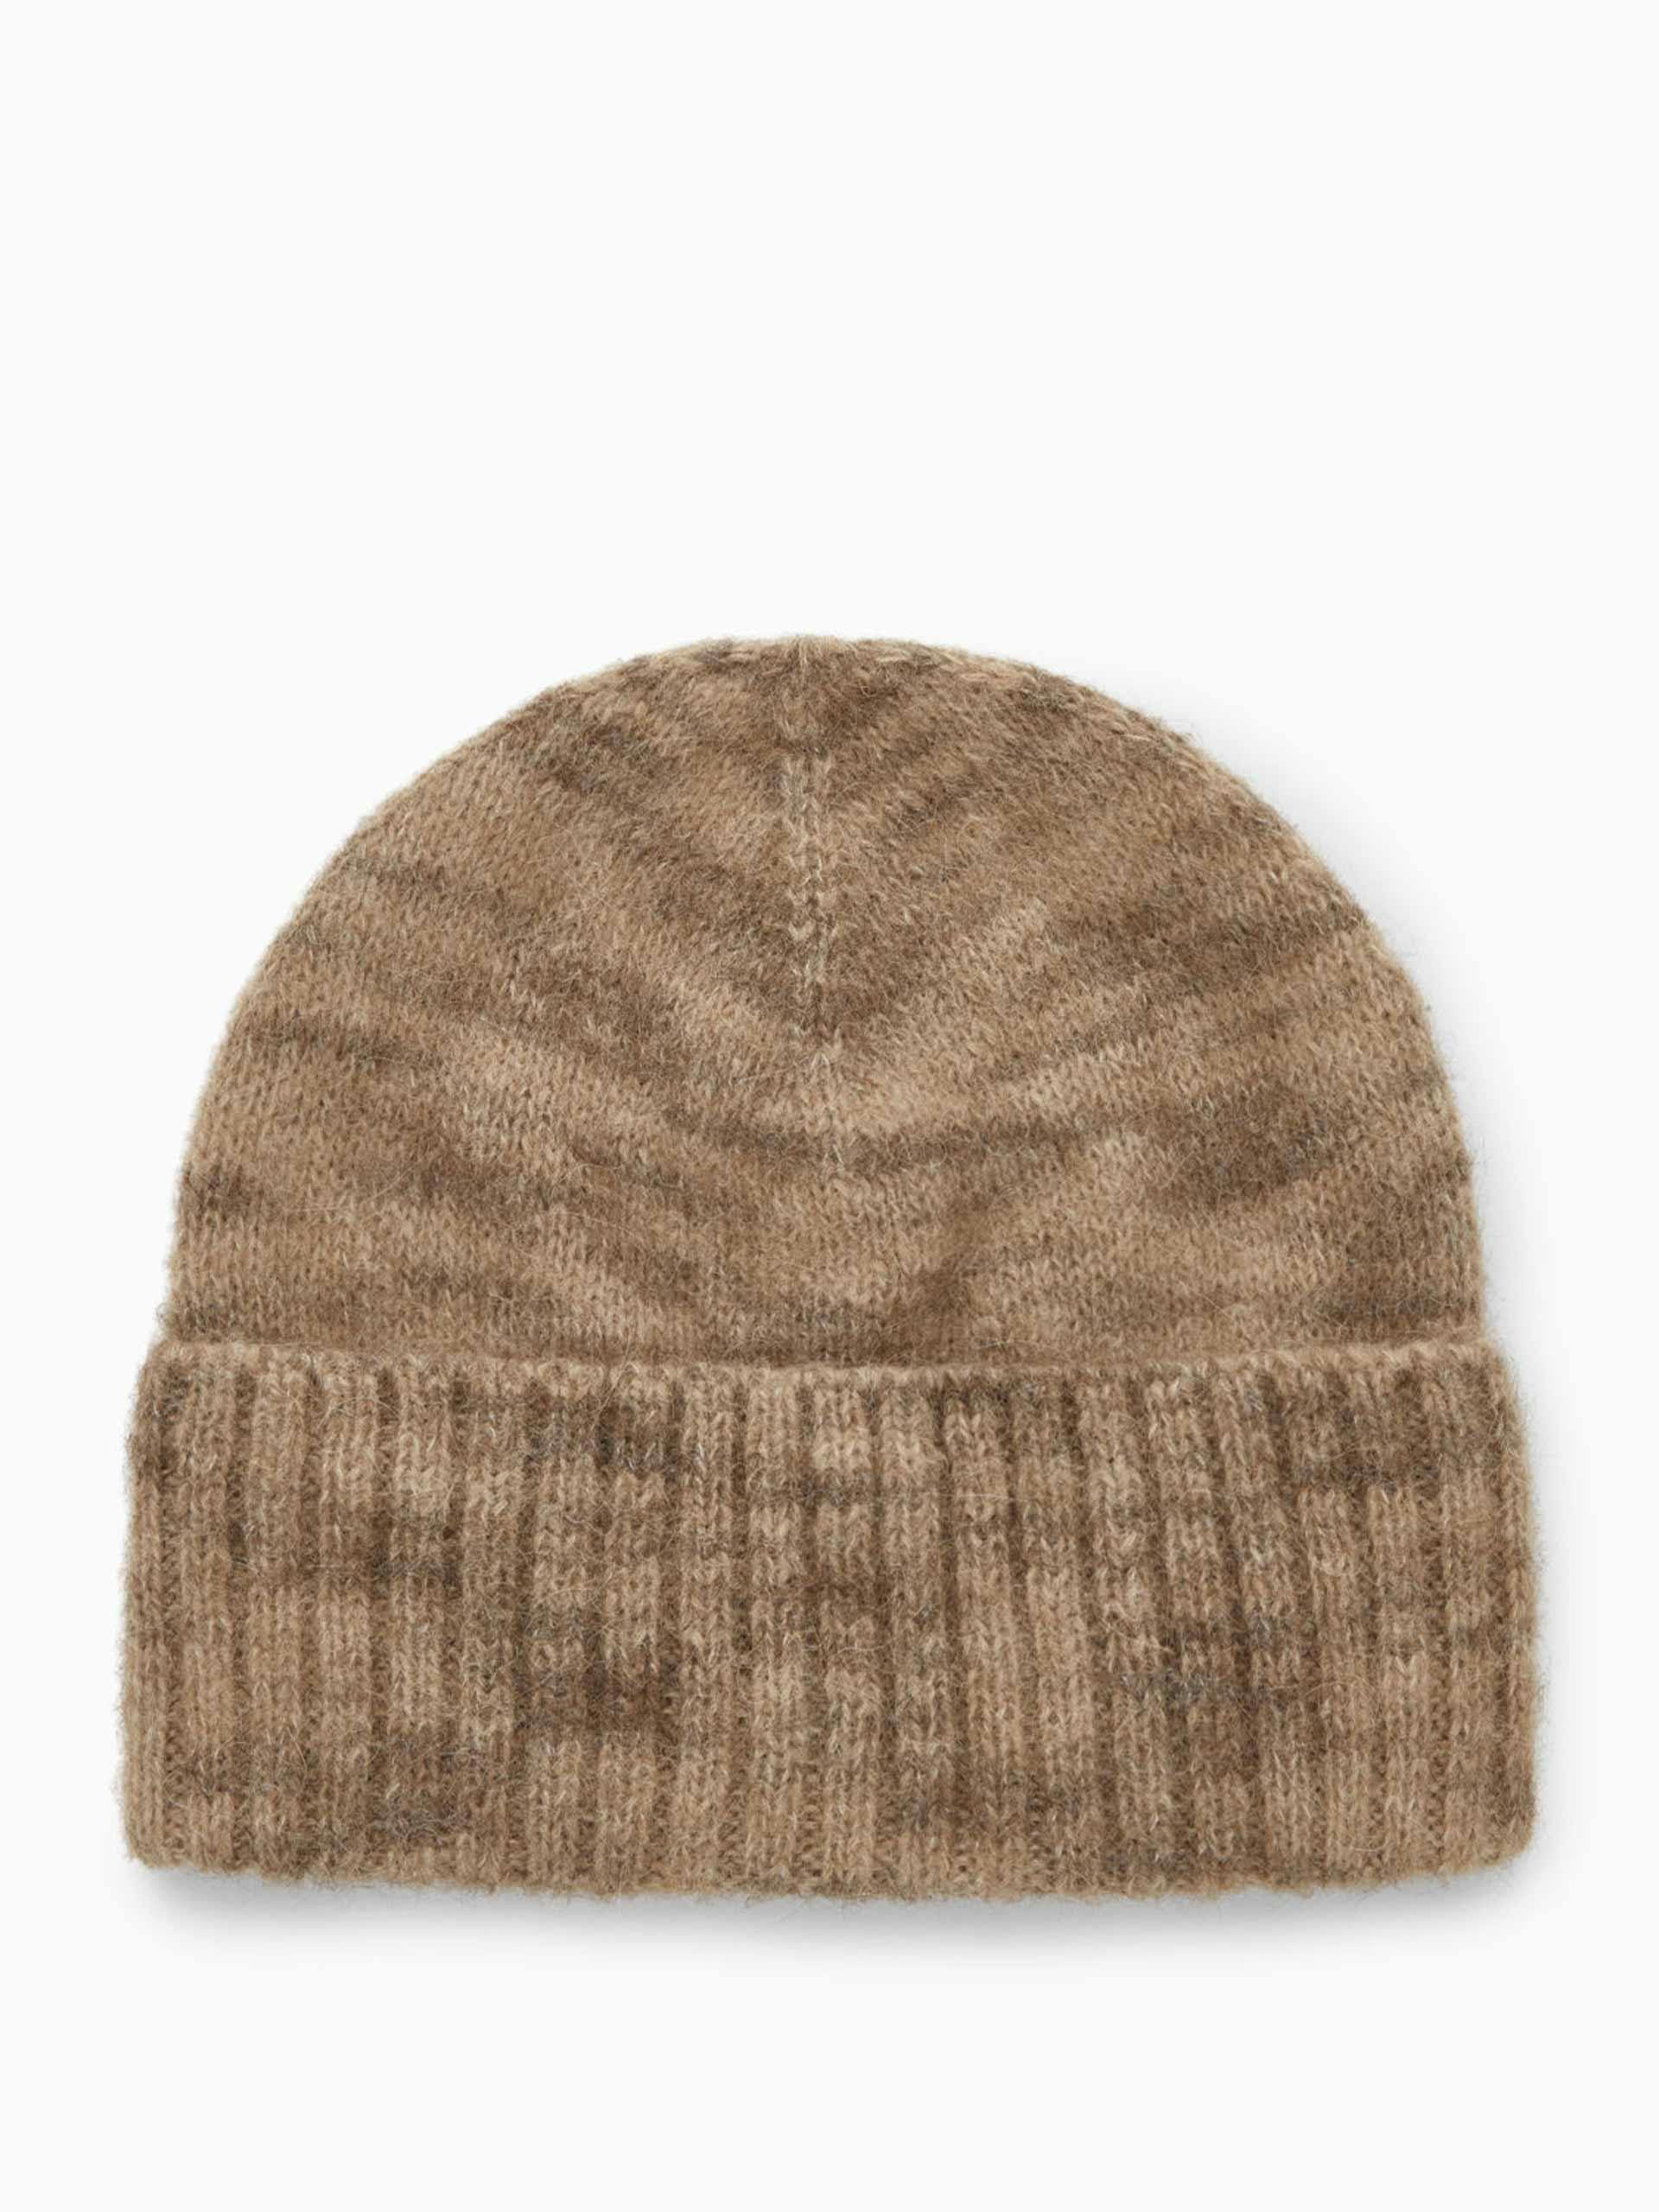 Beige wool blend hat